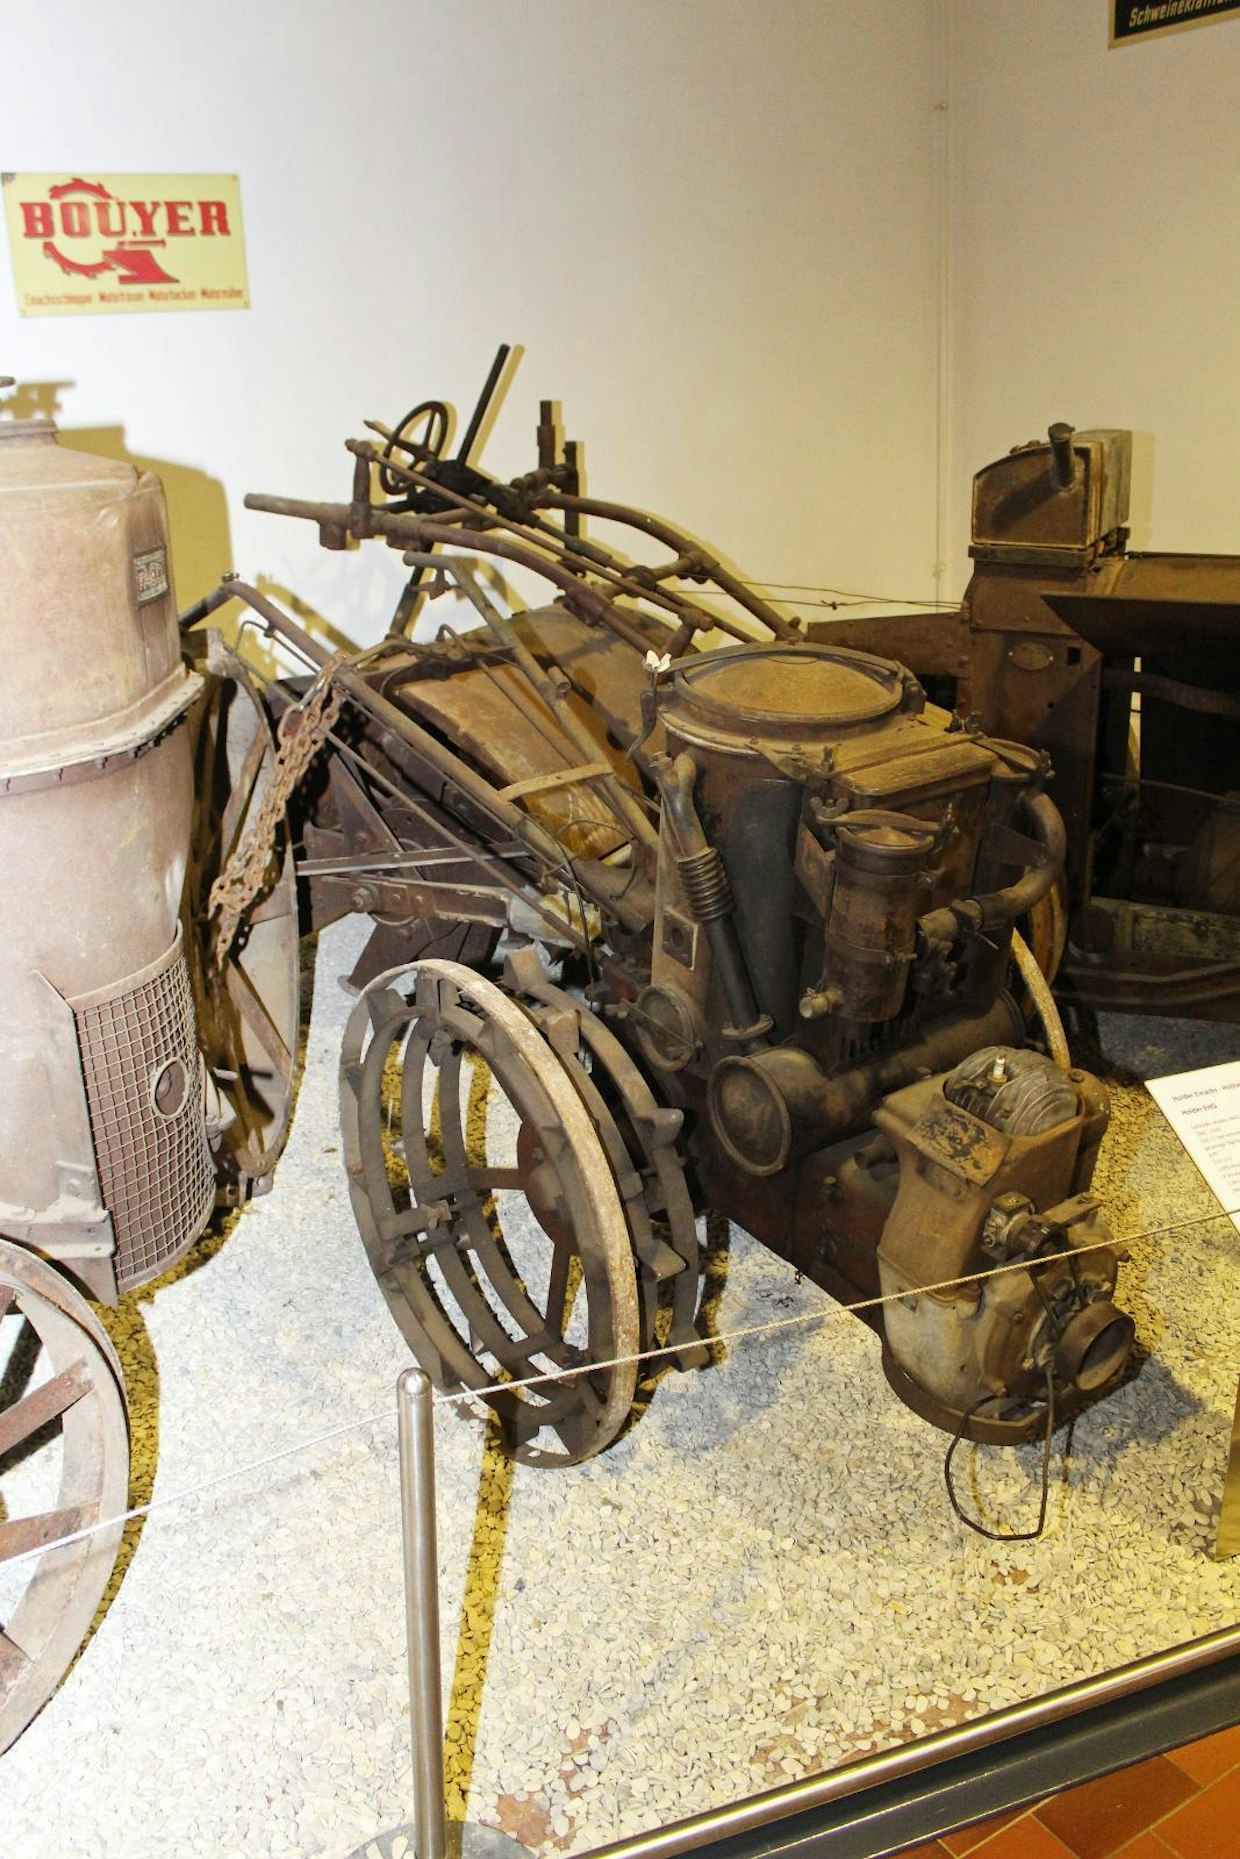 Sota-aikaan sarvitraktoritkin piti varustaa puukaasuttimilla, mikä teki niiden ilmankin raskaasta käsittelystä vieläkin hankalampaa. Vuosina 1942–46 tehty Holder EHG painaa kaasuttimineen 390 kiloa, puolilitrainen 2-tahtimoottori kehittää 6 hv. Säiliöön mahtuu 5 kiloa pilkkeitä. Vaihteita 4 eteen ja pakki. (Paderborn)